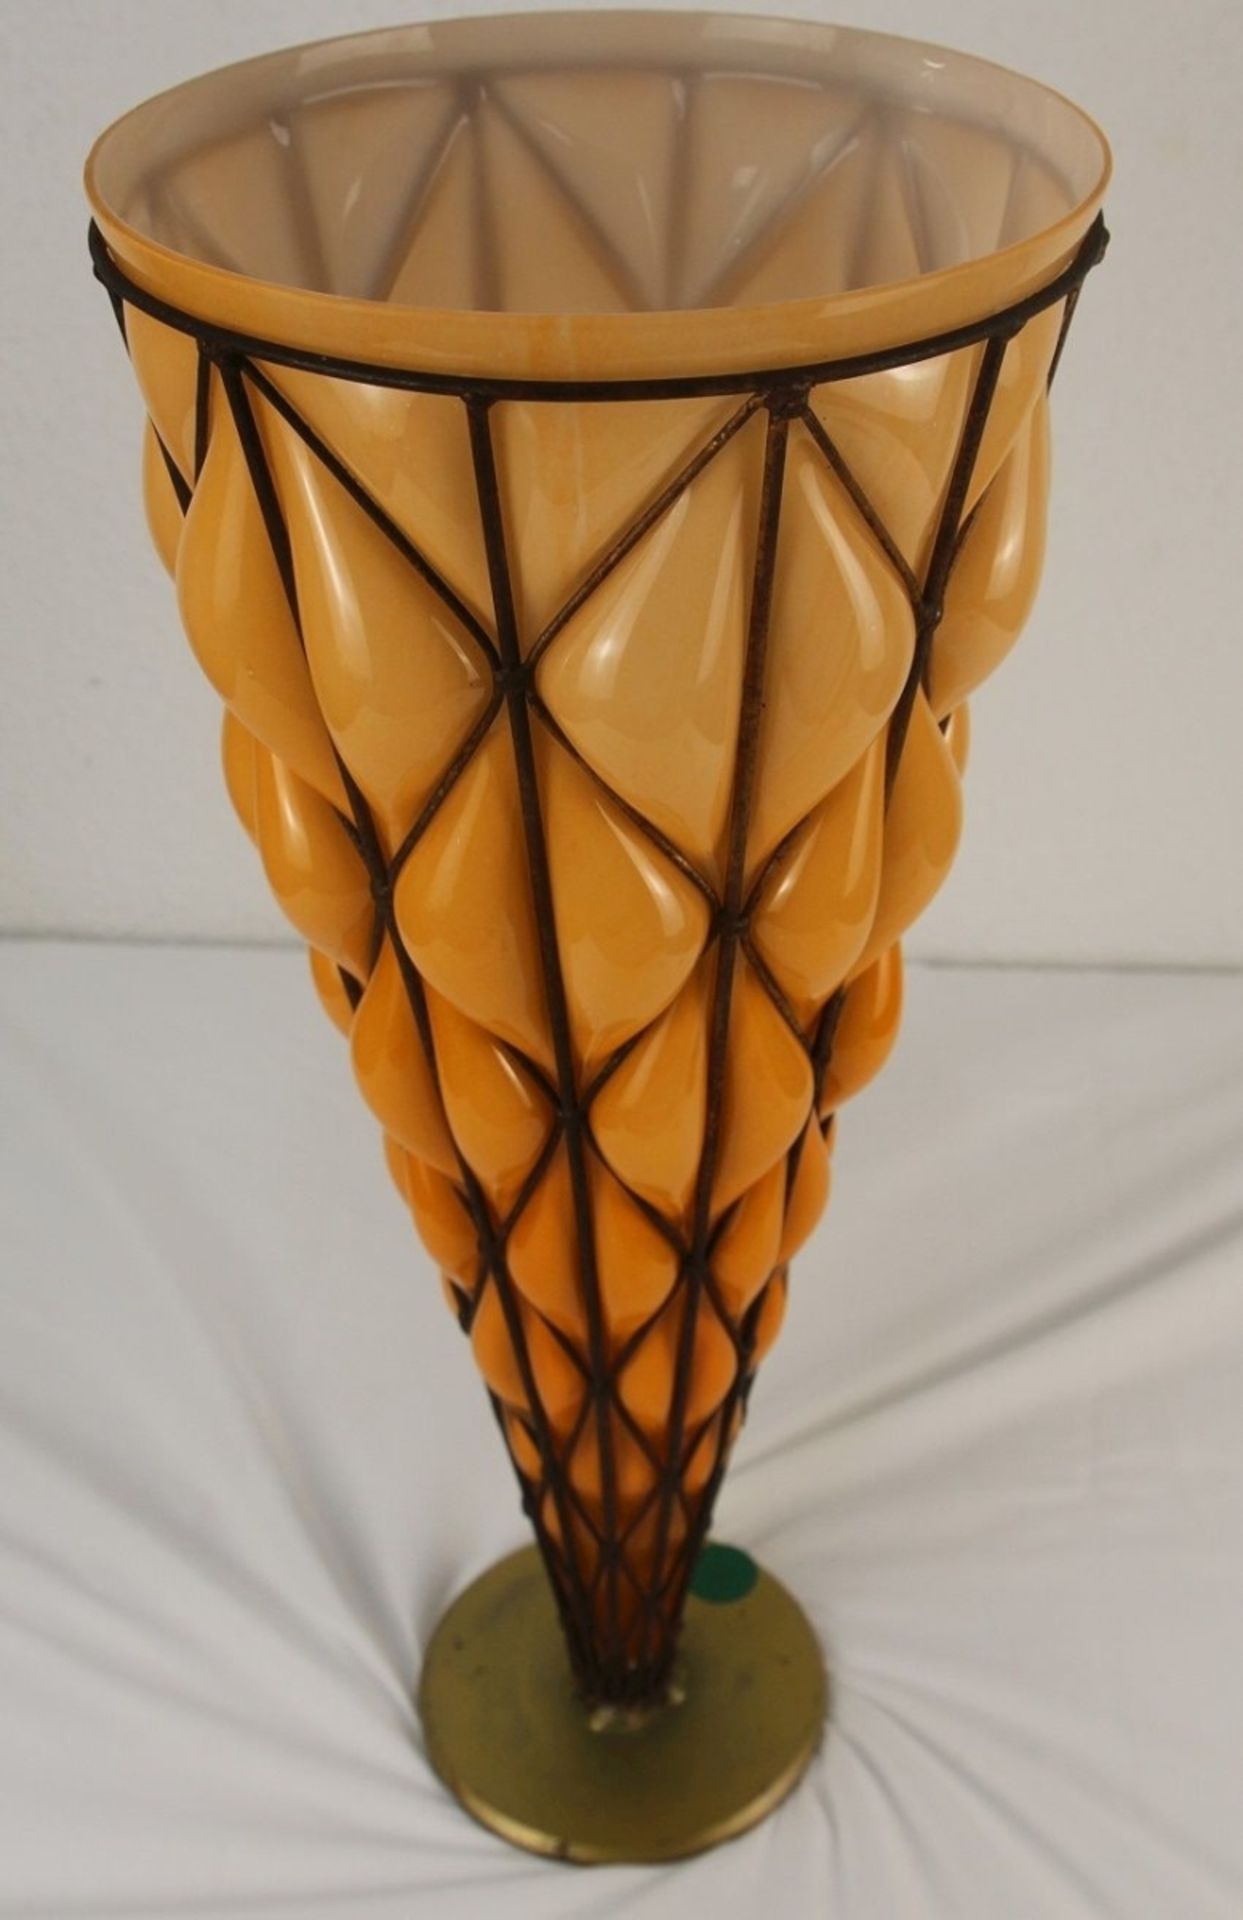 XXL Traumhaft schöne Glas Vase riesige Vase in Metallmontur verm. Murano o. Daum - Bild 3 aus 11